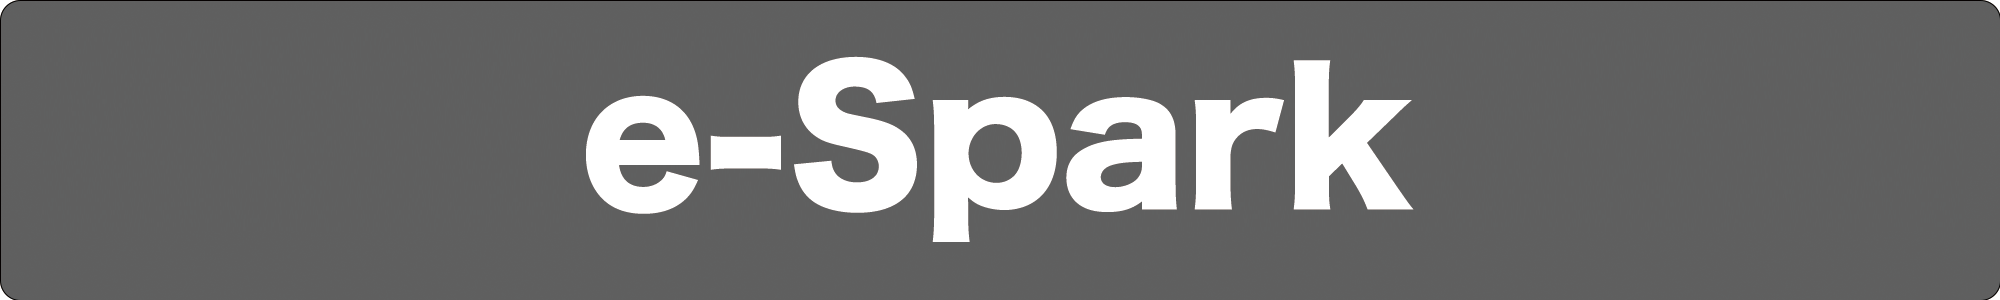 e-Spark